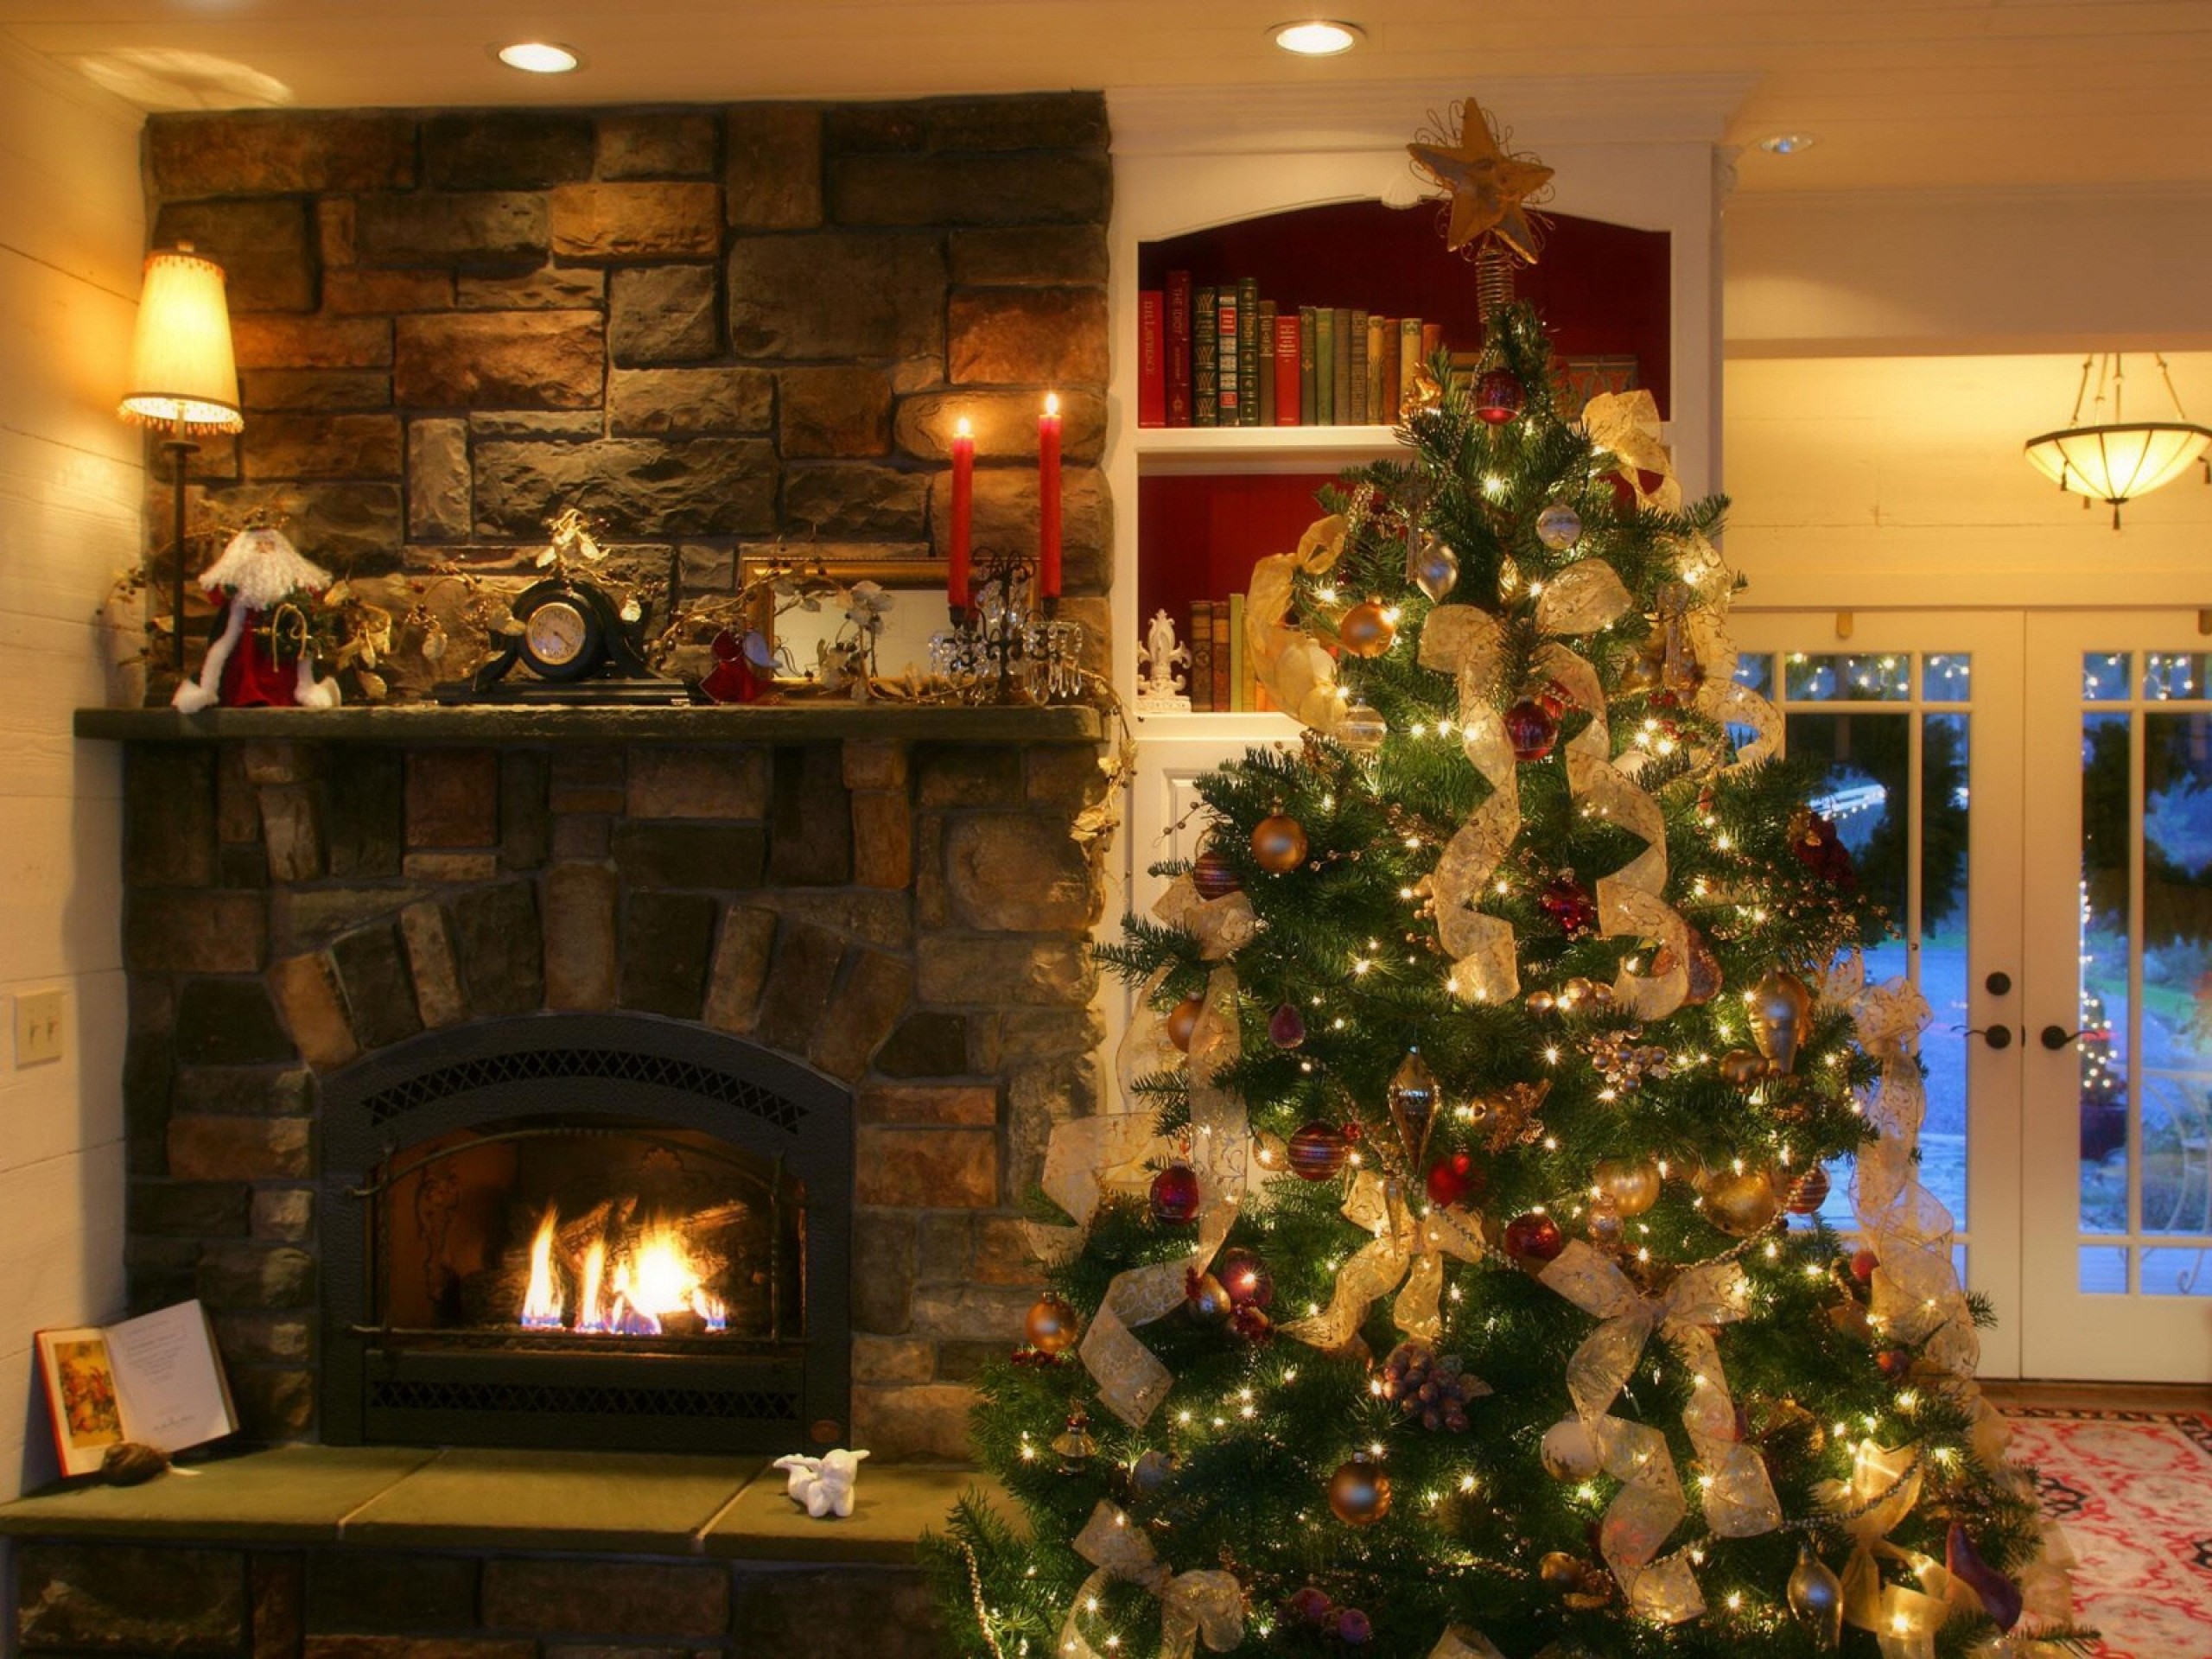 2560x1920 Christmas Fireplace 1600x1200 Wallpaper Wallpaper  .